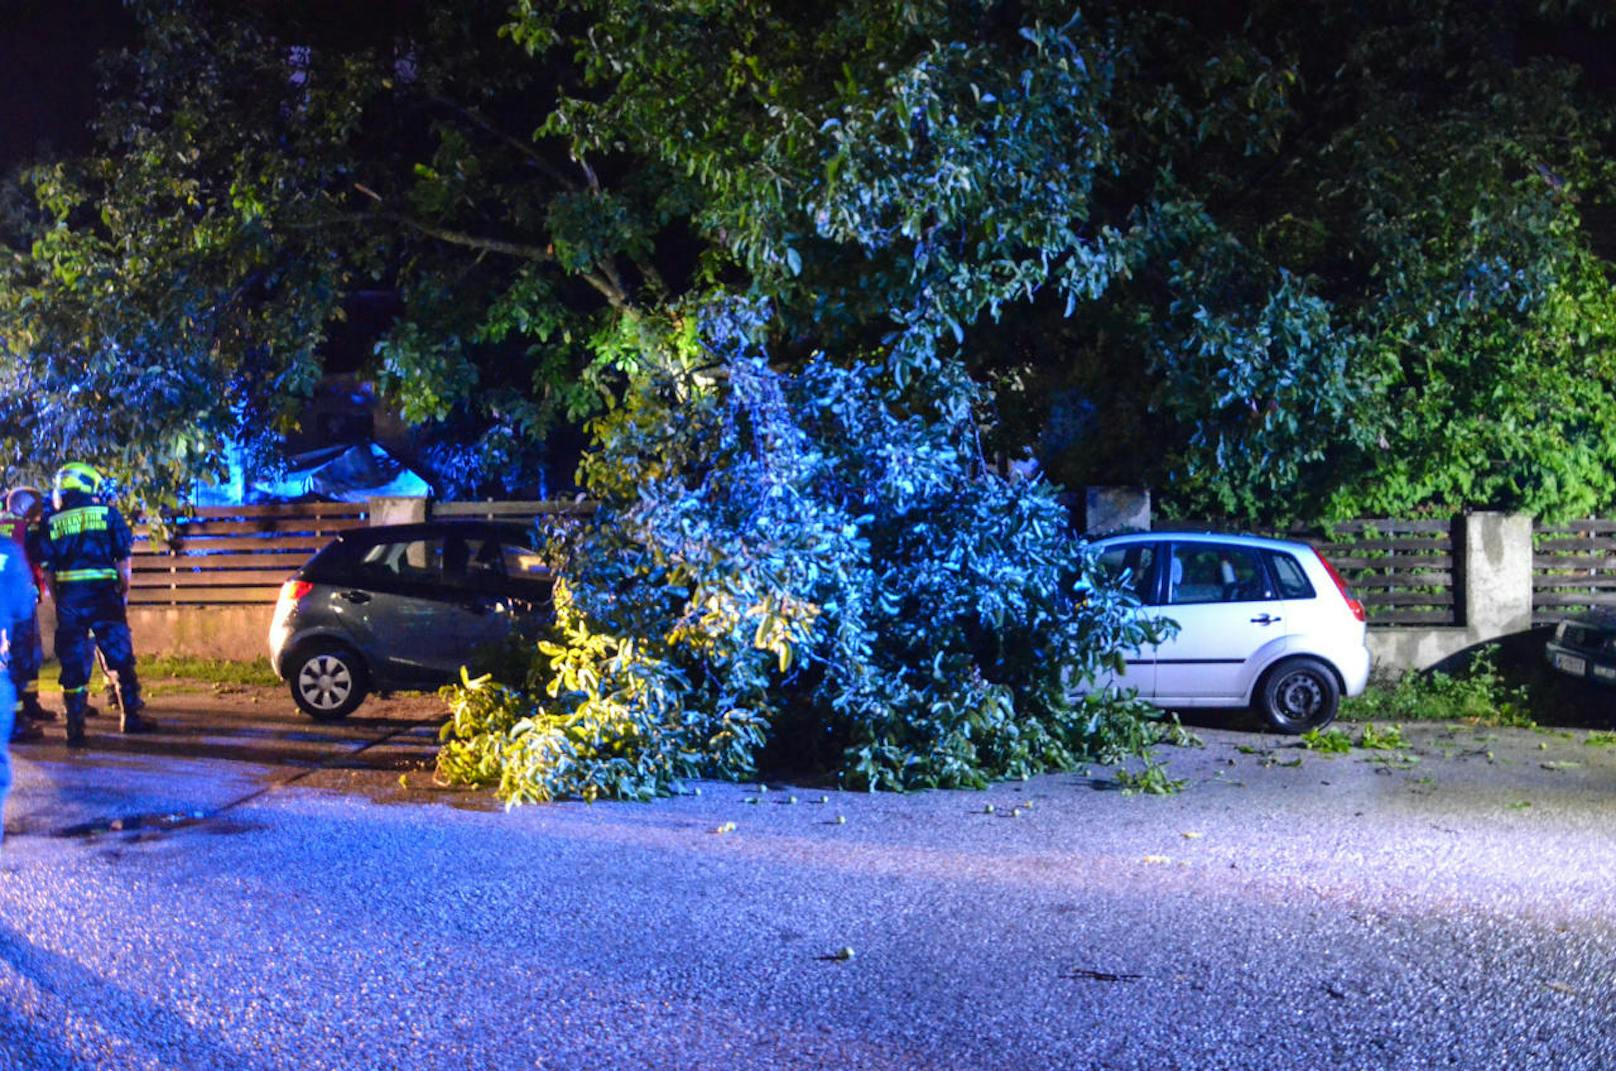 Bei einem heftigen Unwetter in der Nacht auf Freitag wurden im Stadtgebiet von Baden zahlreiche Bäume umgerissen und Autos durch Äste beschädigt. In Haschendorf in Wiener Neustadt riss eine Schafherde aus, als ein Zaun umgerissen wurde. Mehrere Feuerwehren waren im Einsatz.